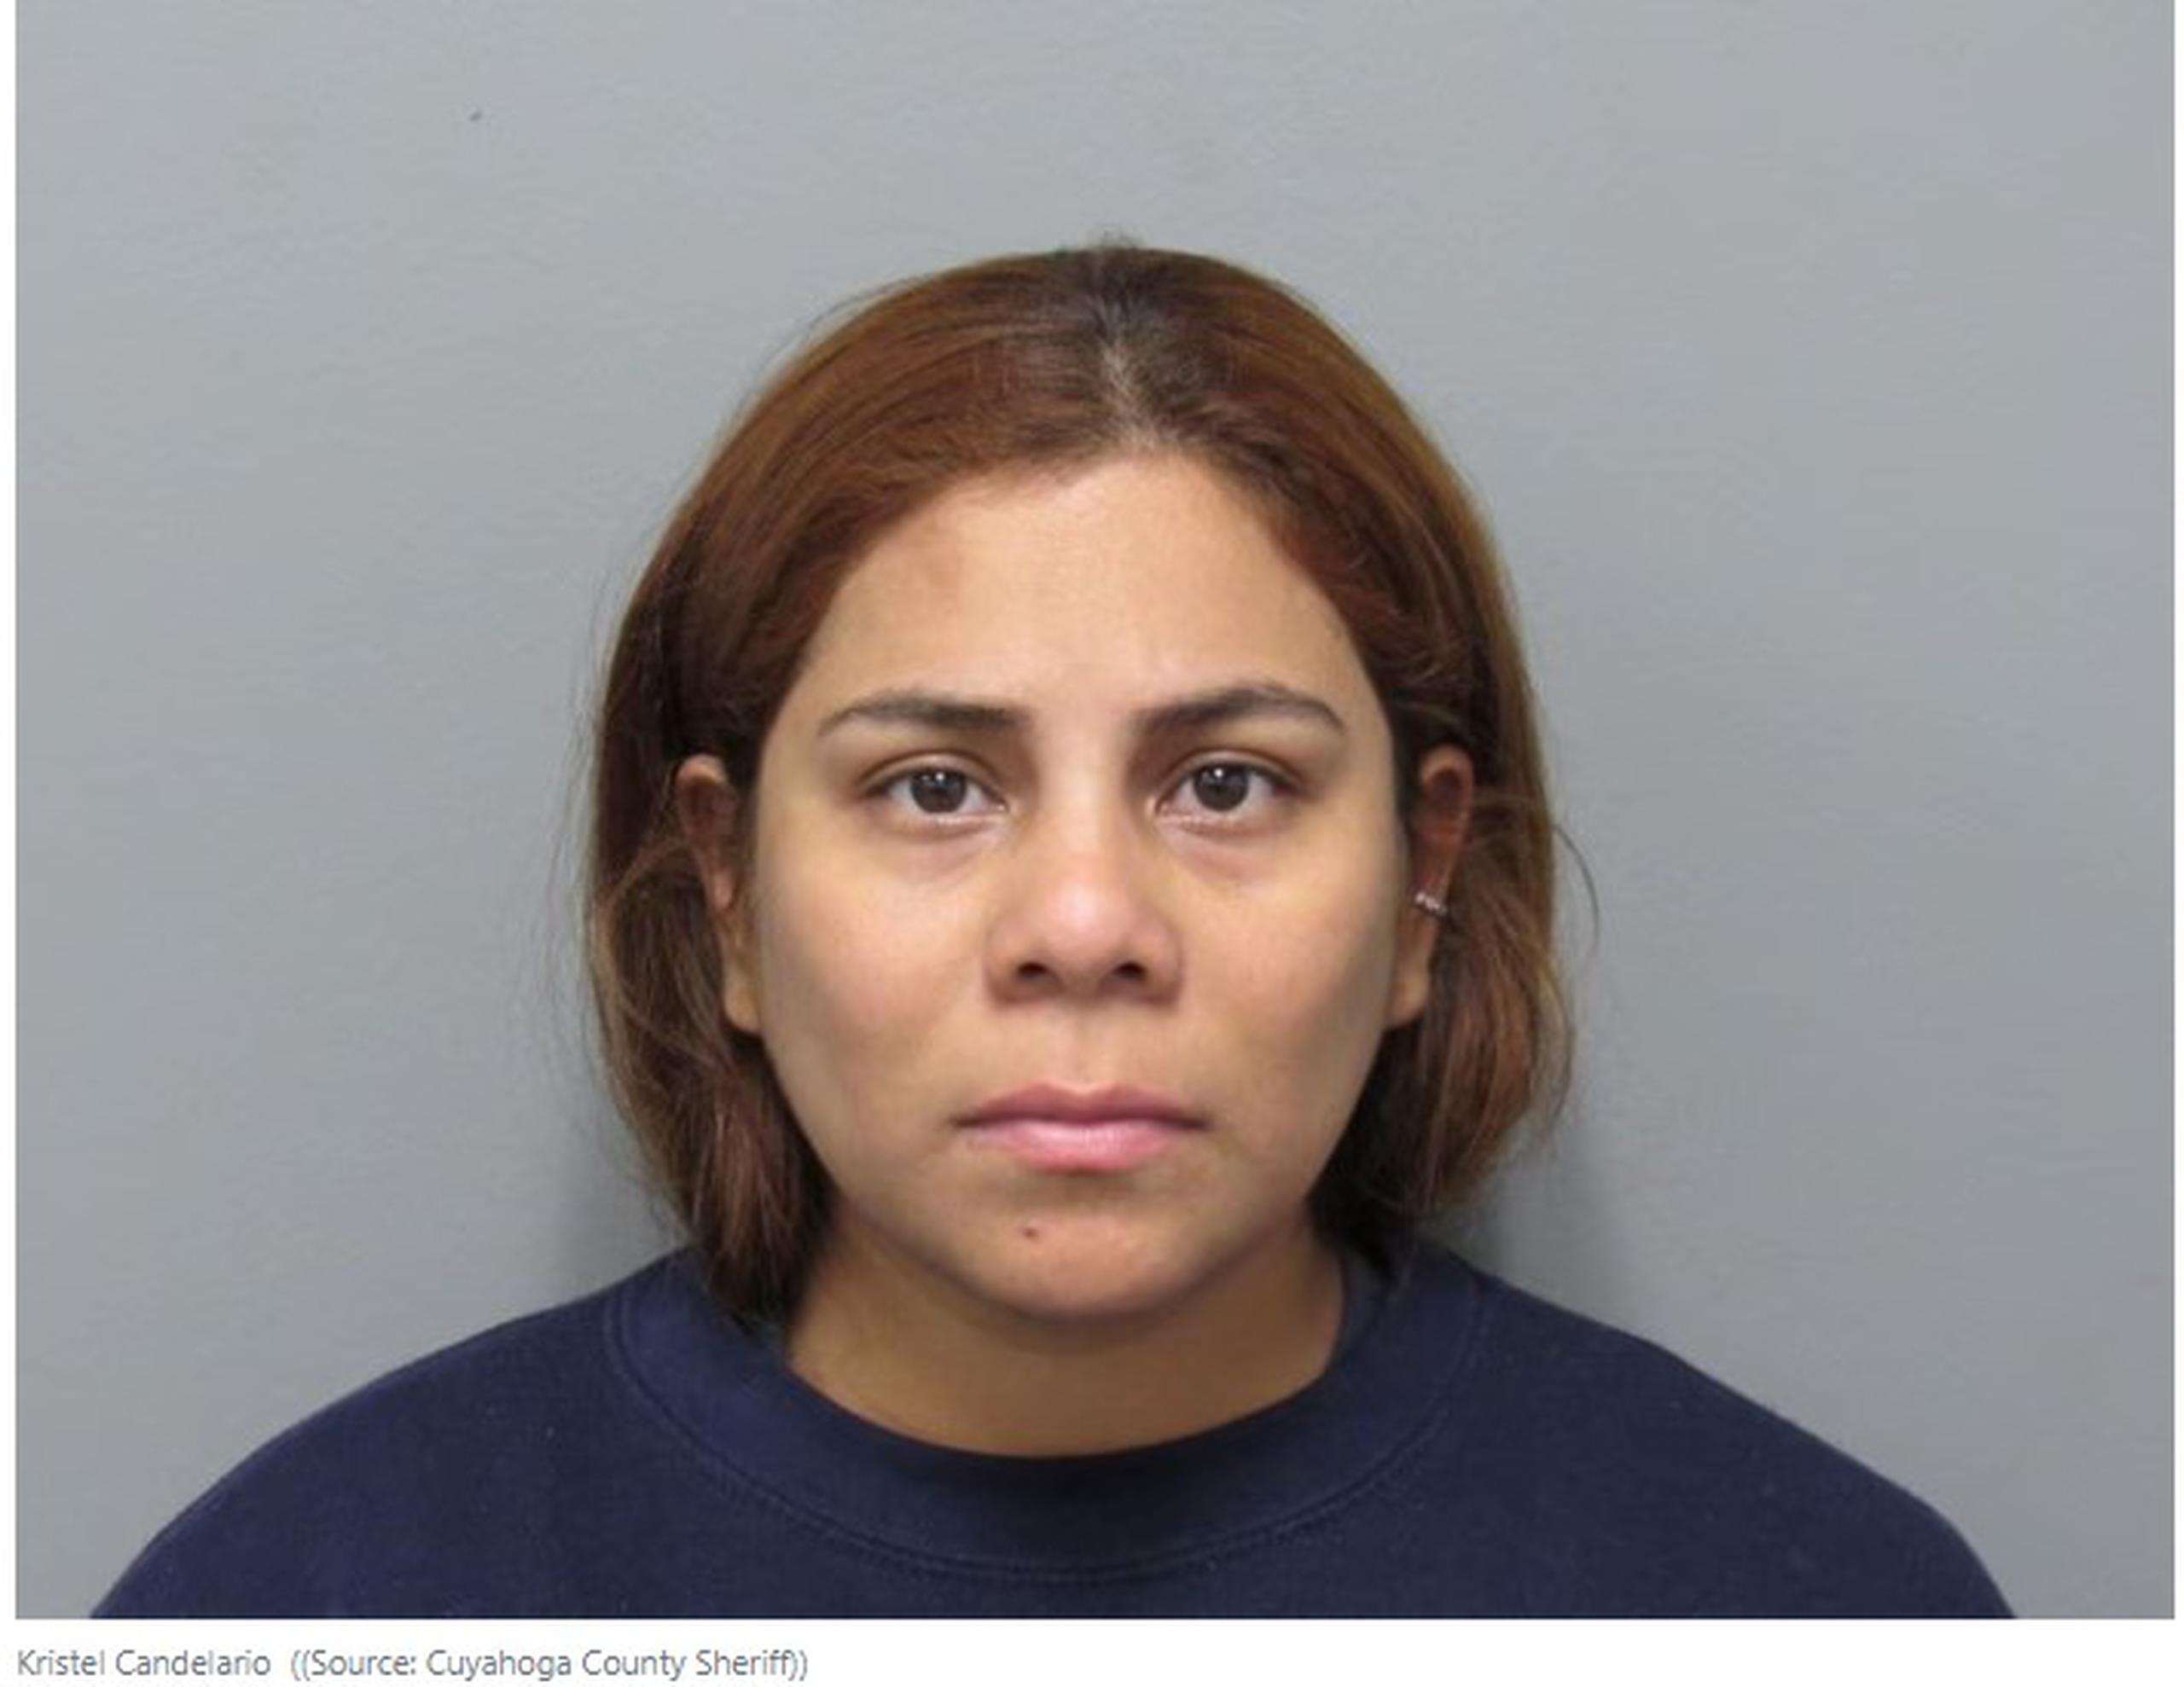 Alegadamente, Kristel Candelario confesó que dejó a su pequeña hija de 16 meses “sola y desatendida” mientras vacacionó por una semana en Puerto Rico y Detroit.